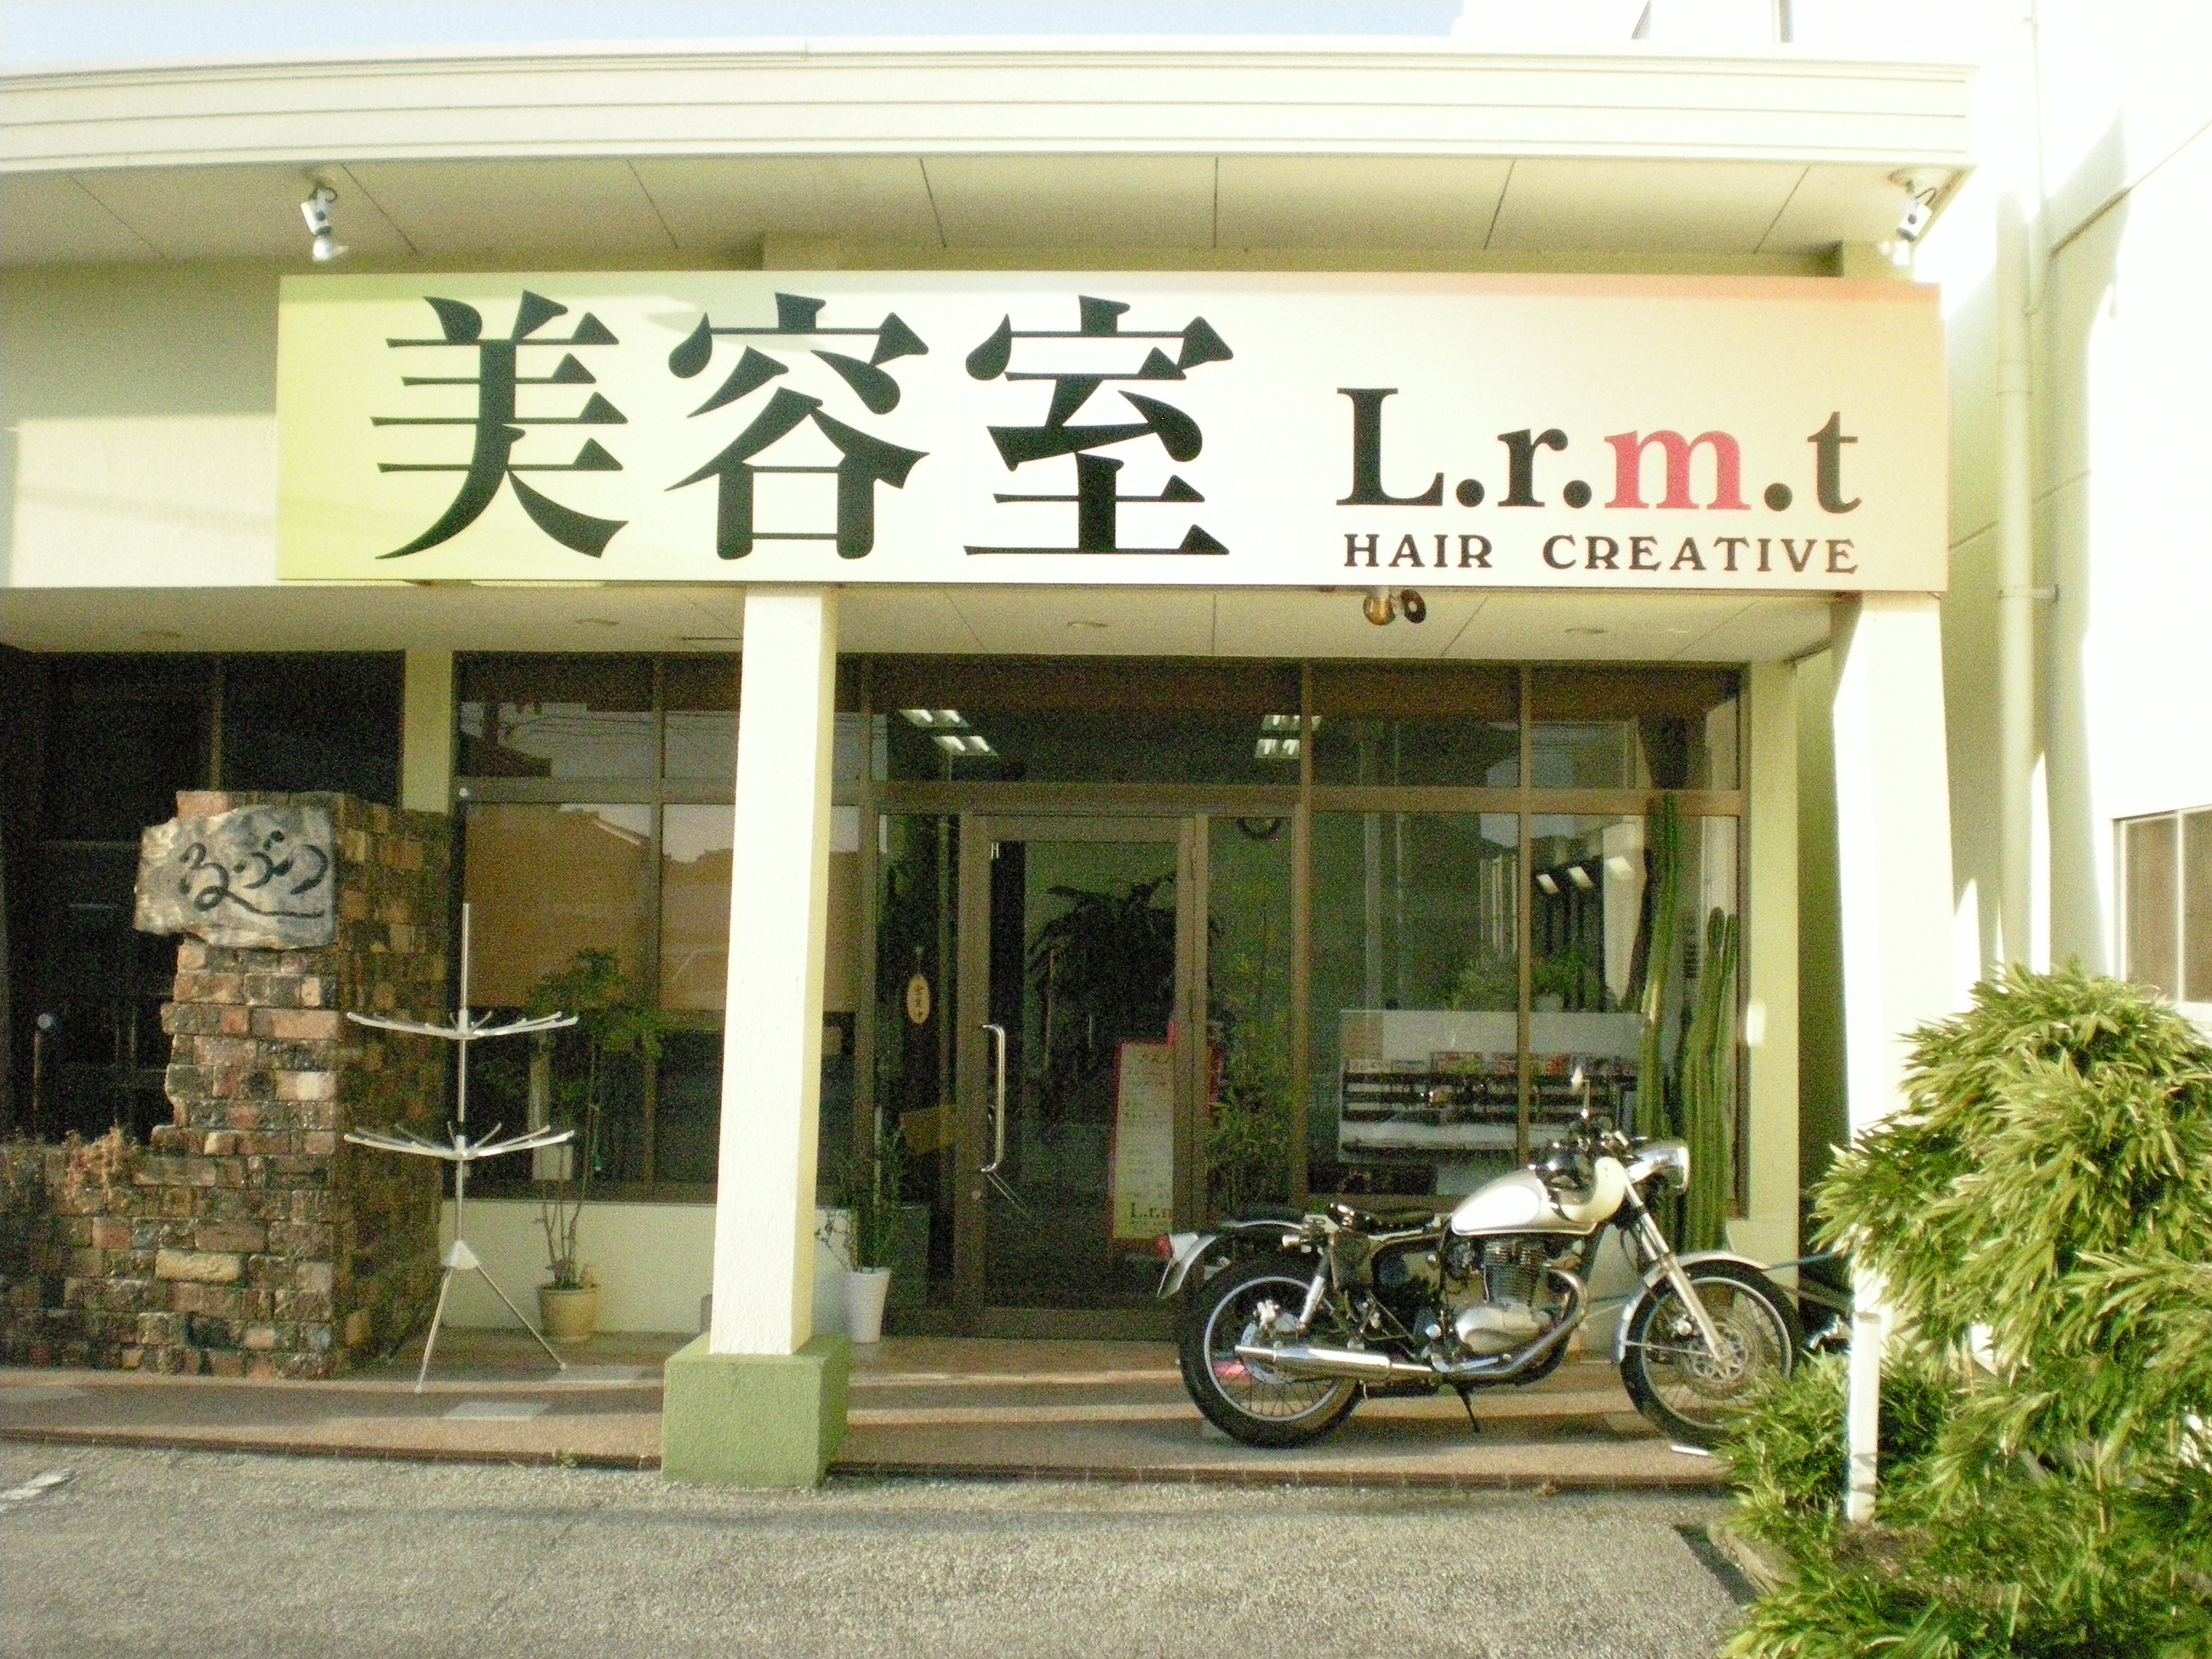 美容室の看板 高知県 南国市の美容室 Hair Salon Lr 旧l R M Tのブログ